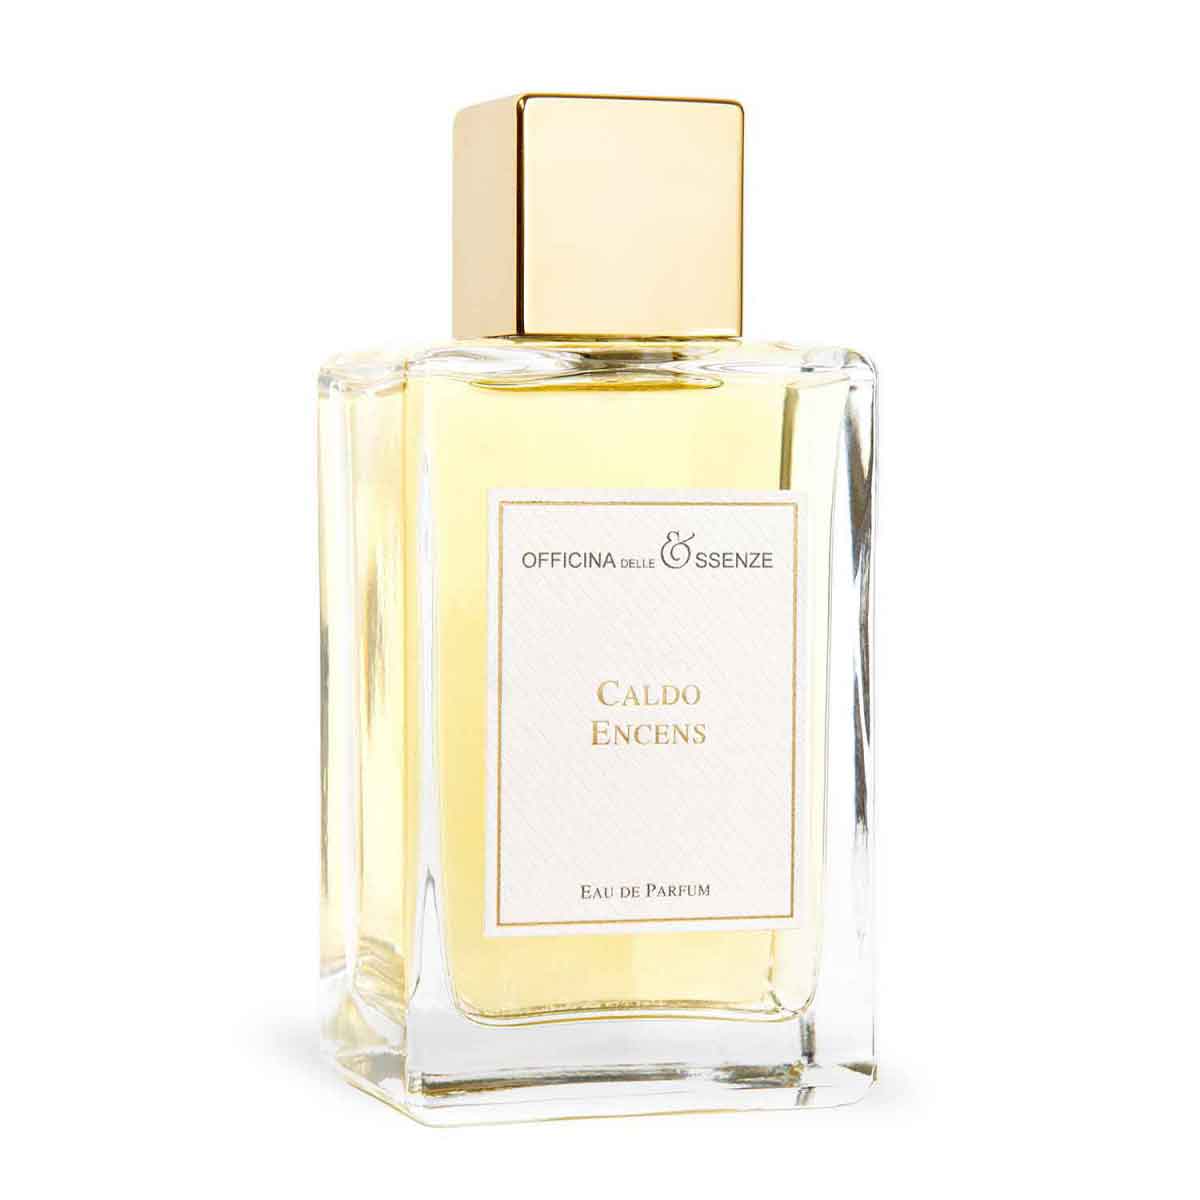 Caldo Encens Eau de Parfum by Officina delle Essenze